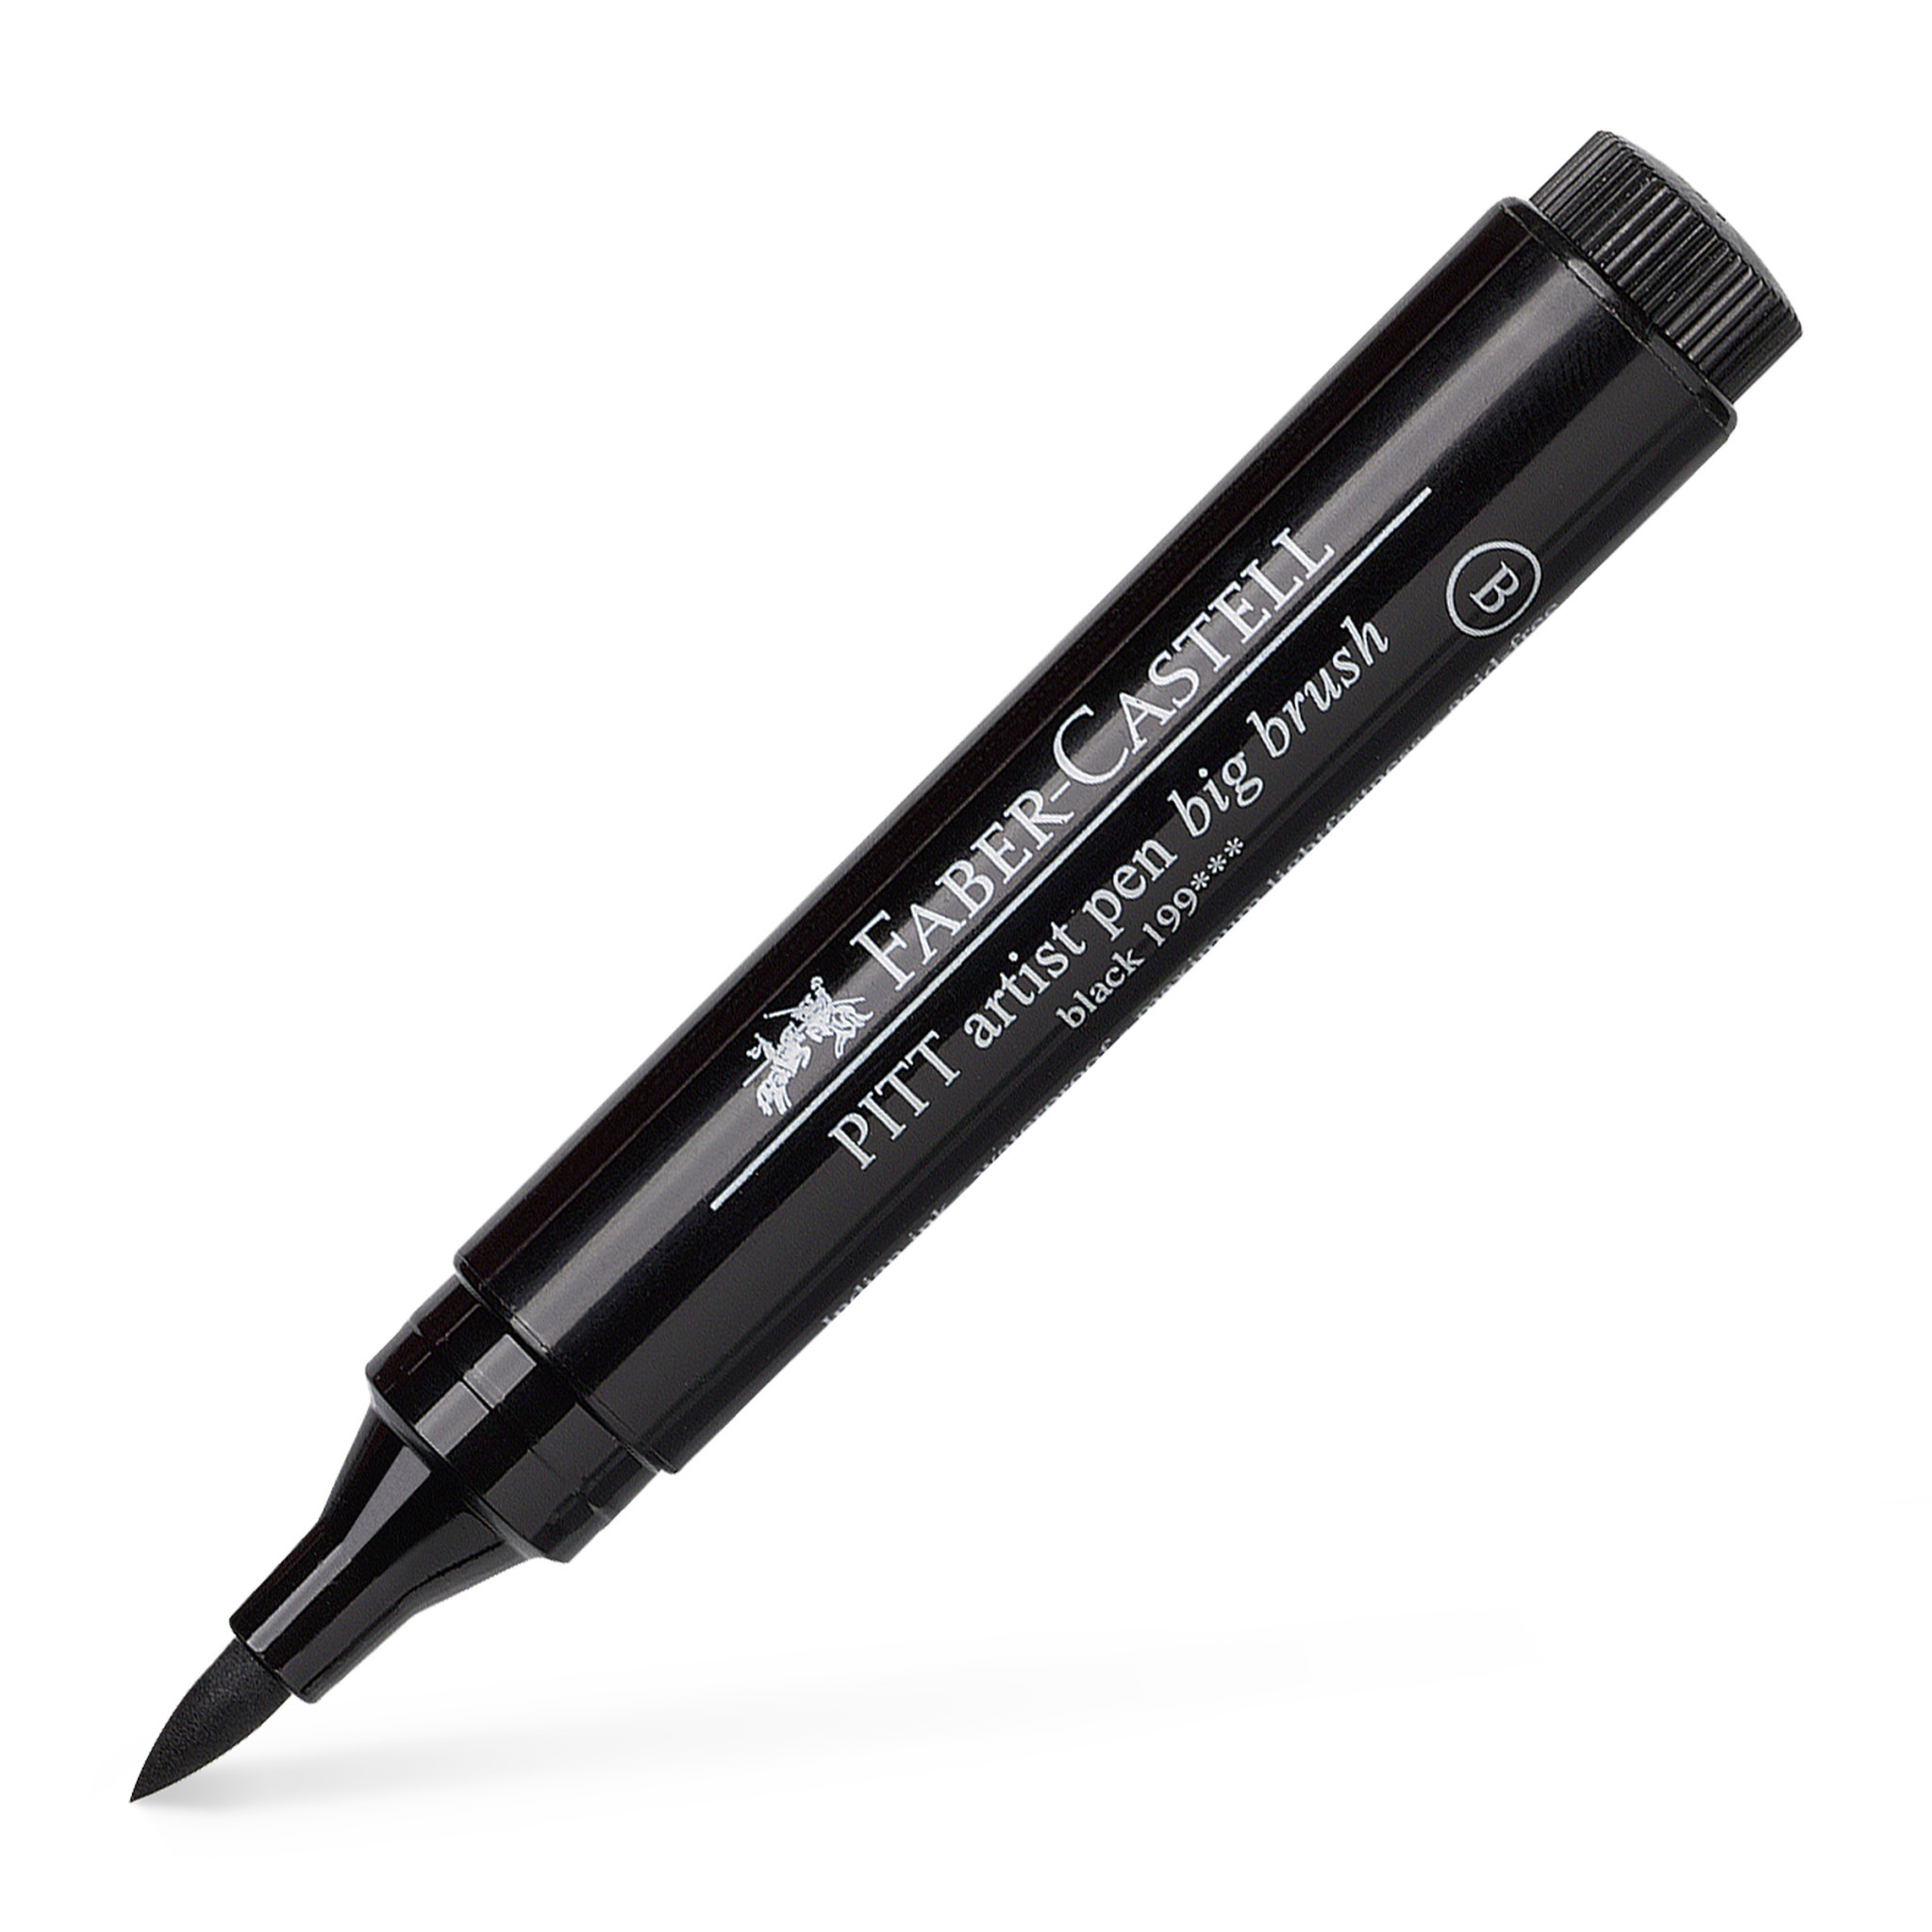 voordelig Beven Vruchtbaar Faber-Castell PITT Artist Pen, Big Brush Pen, Black - RISD Store